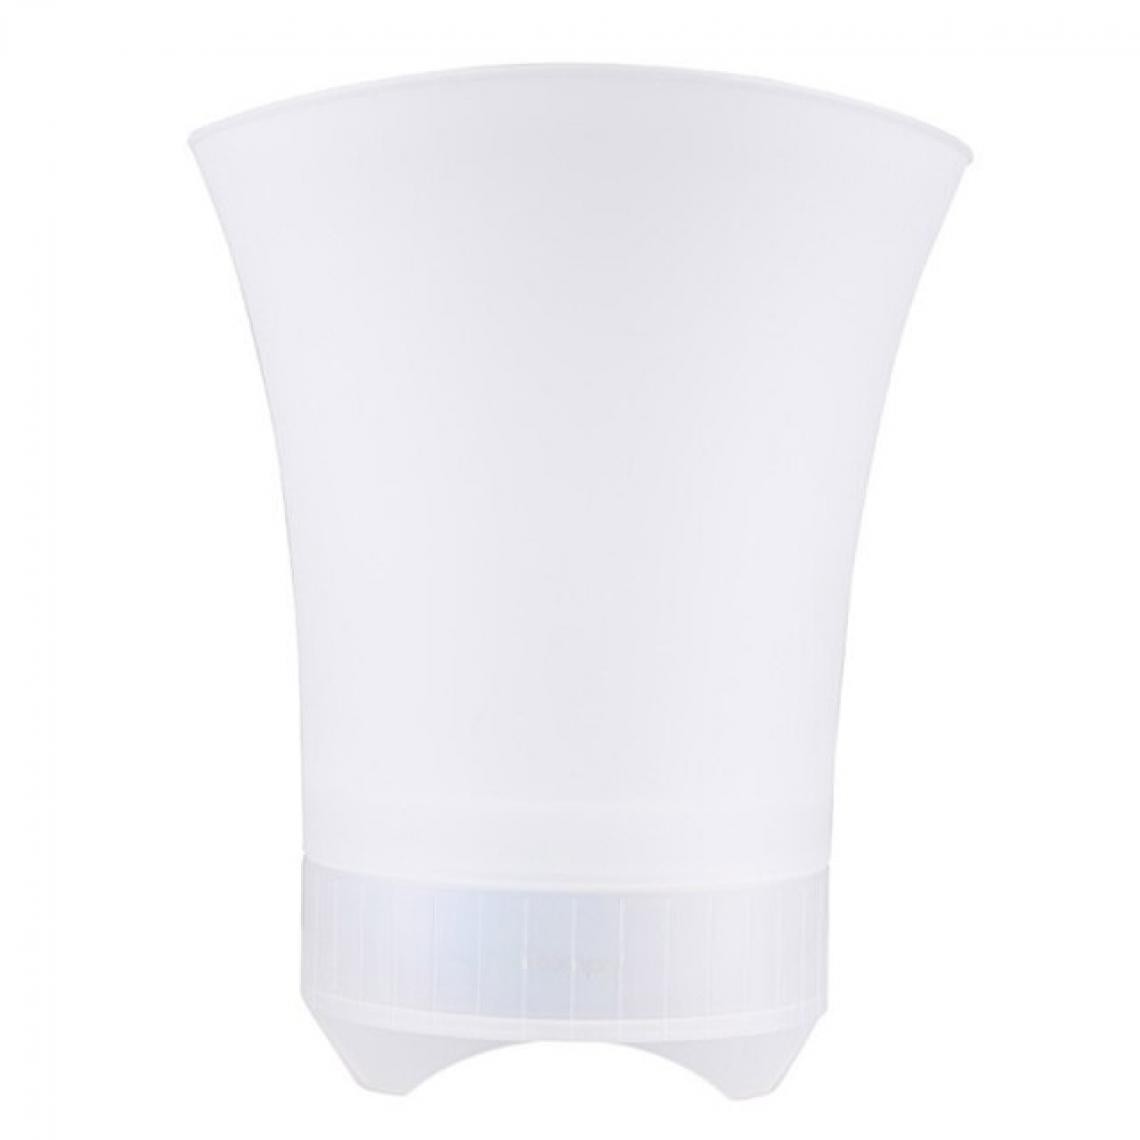 Universal - Haut-parleur à seau de glace avec lumière LED 6 mode subwoofer réglable équipement haut-parleur sans fil Bluetooth pour bar KTV | subwoofer (blanc) - Hauts-parleurs